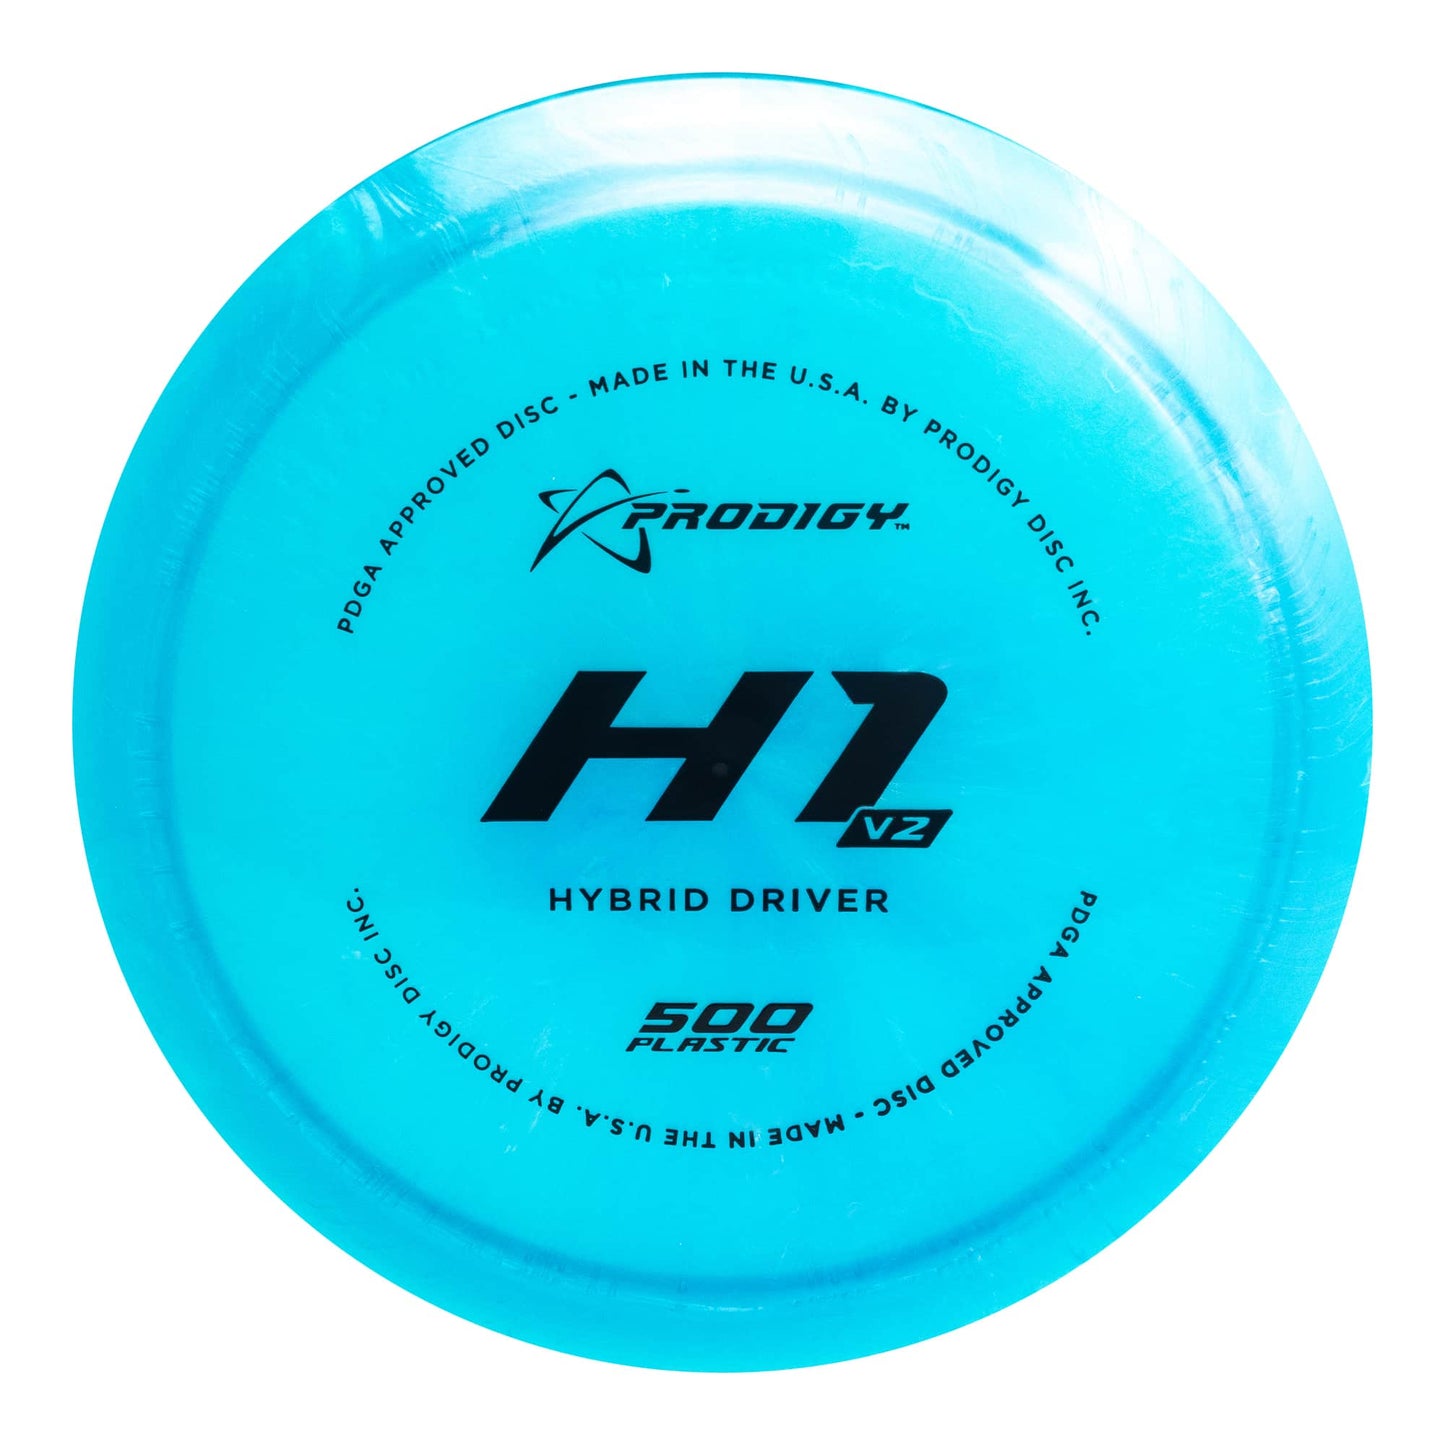 Prodigy H1 V2 Hybrid Driver - 500 Plastic